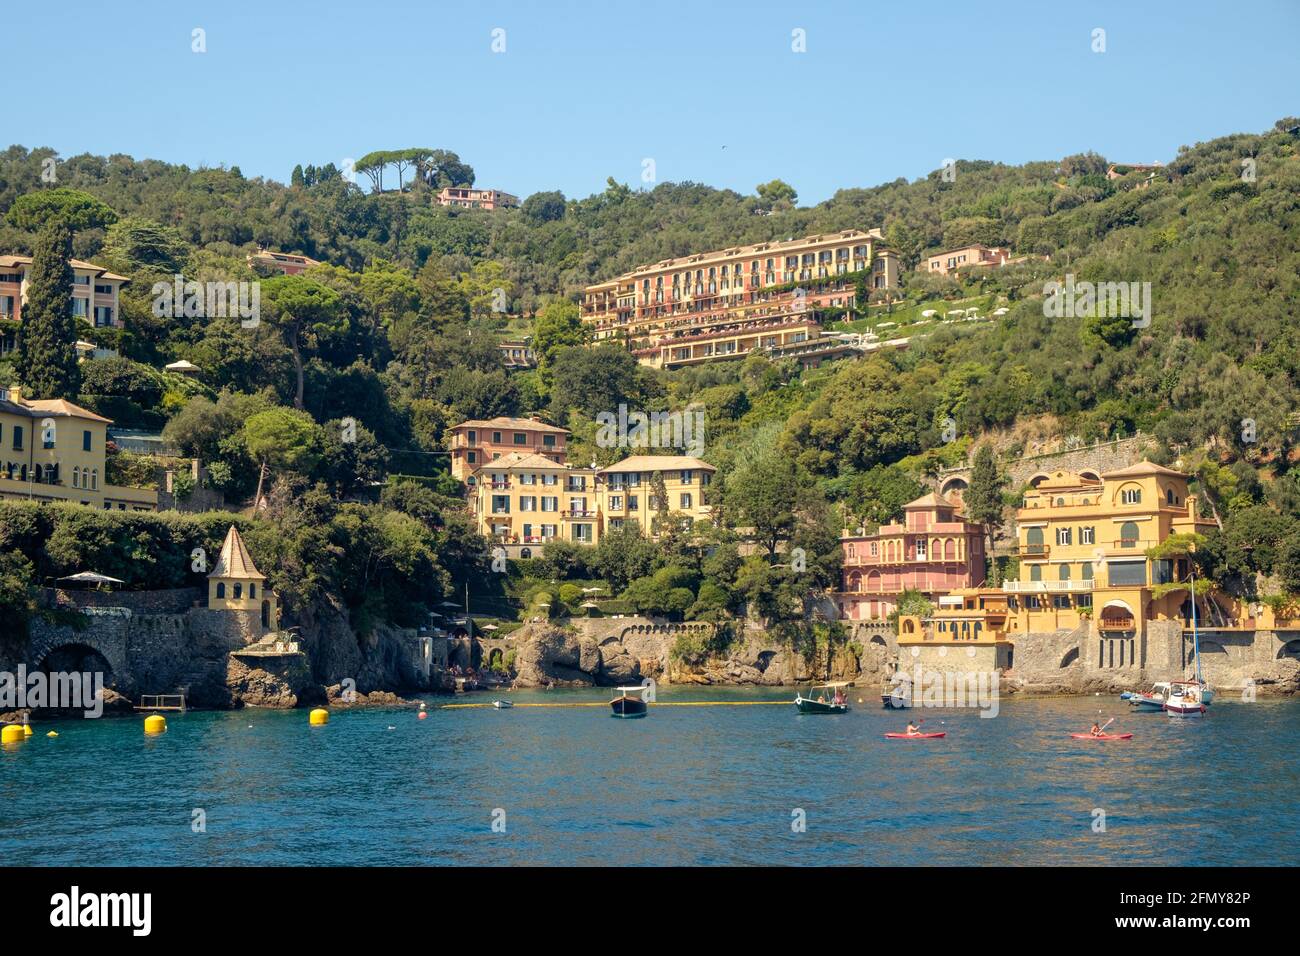 Les hôtels et autres bâtiments élégants sont construits sur une colline  verdoyante qui s'élève de la mer Ligurienne.Ils font partie de Santa  Margherita Ligure Photo Stock - Alamy